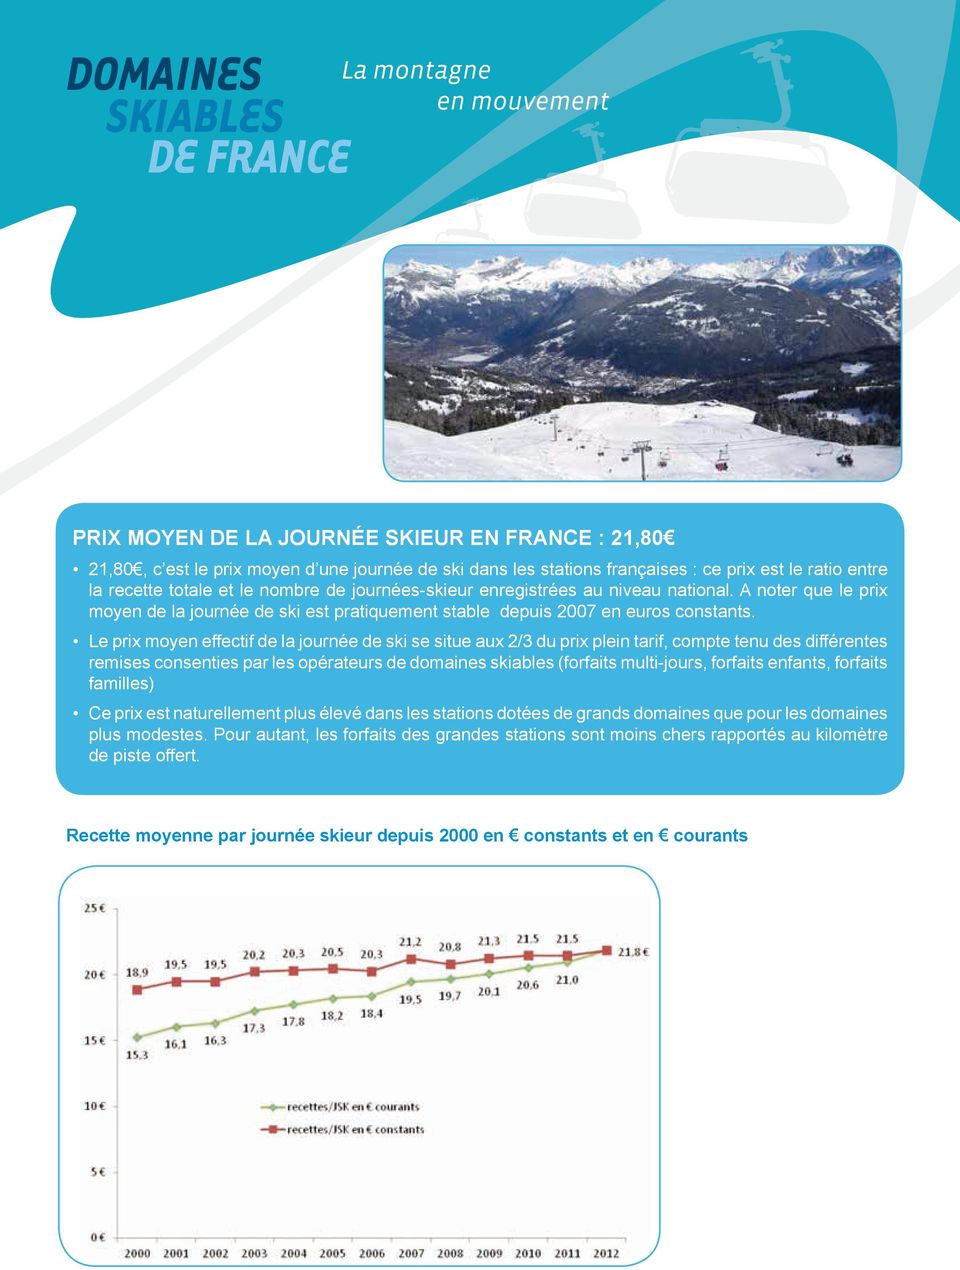 Le prix moyen effectif de la journée de ski se situe aux 2/3 du prix plein tarif, compte tenu des différentes remises consenties par les opérateurs de domaines skiables (forfaits multi-jours,